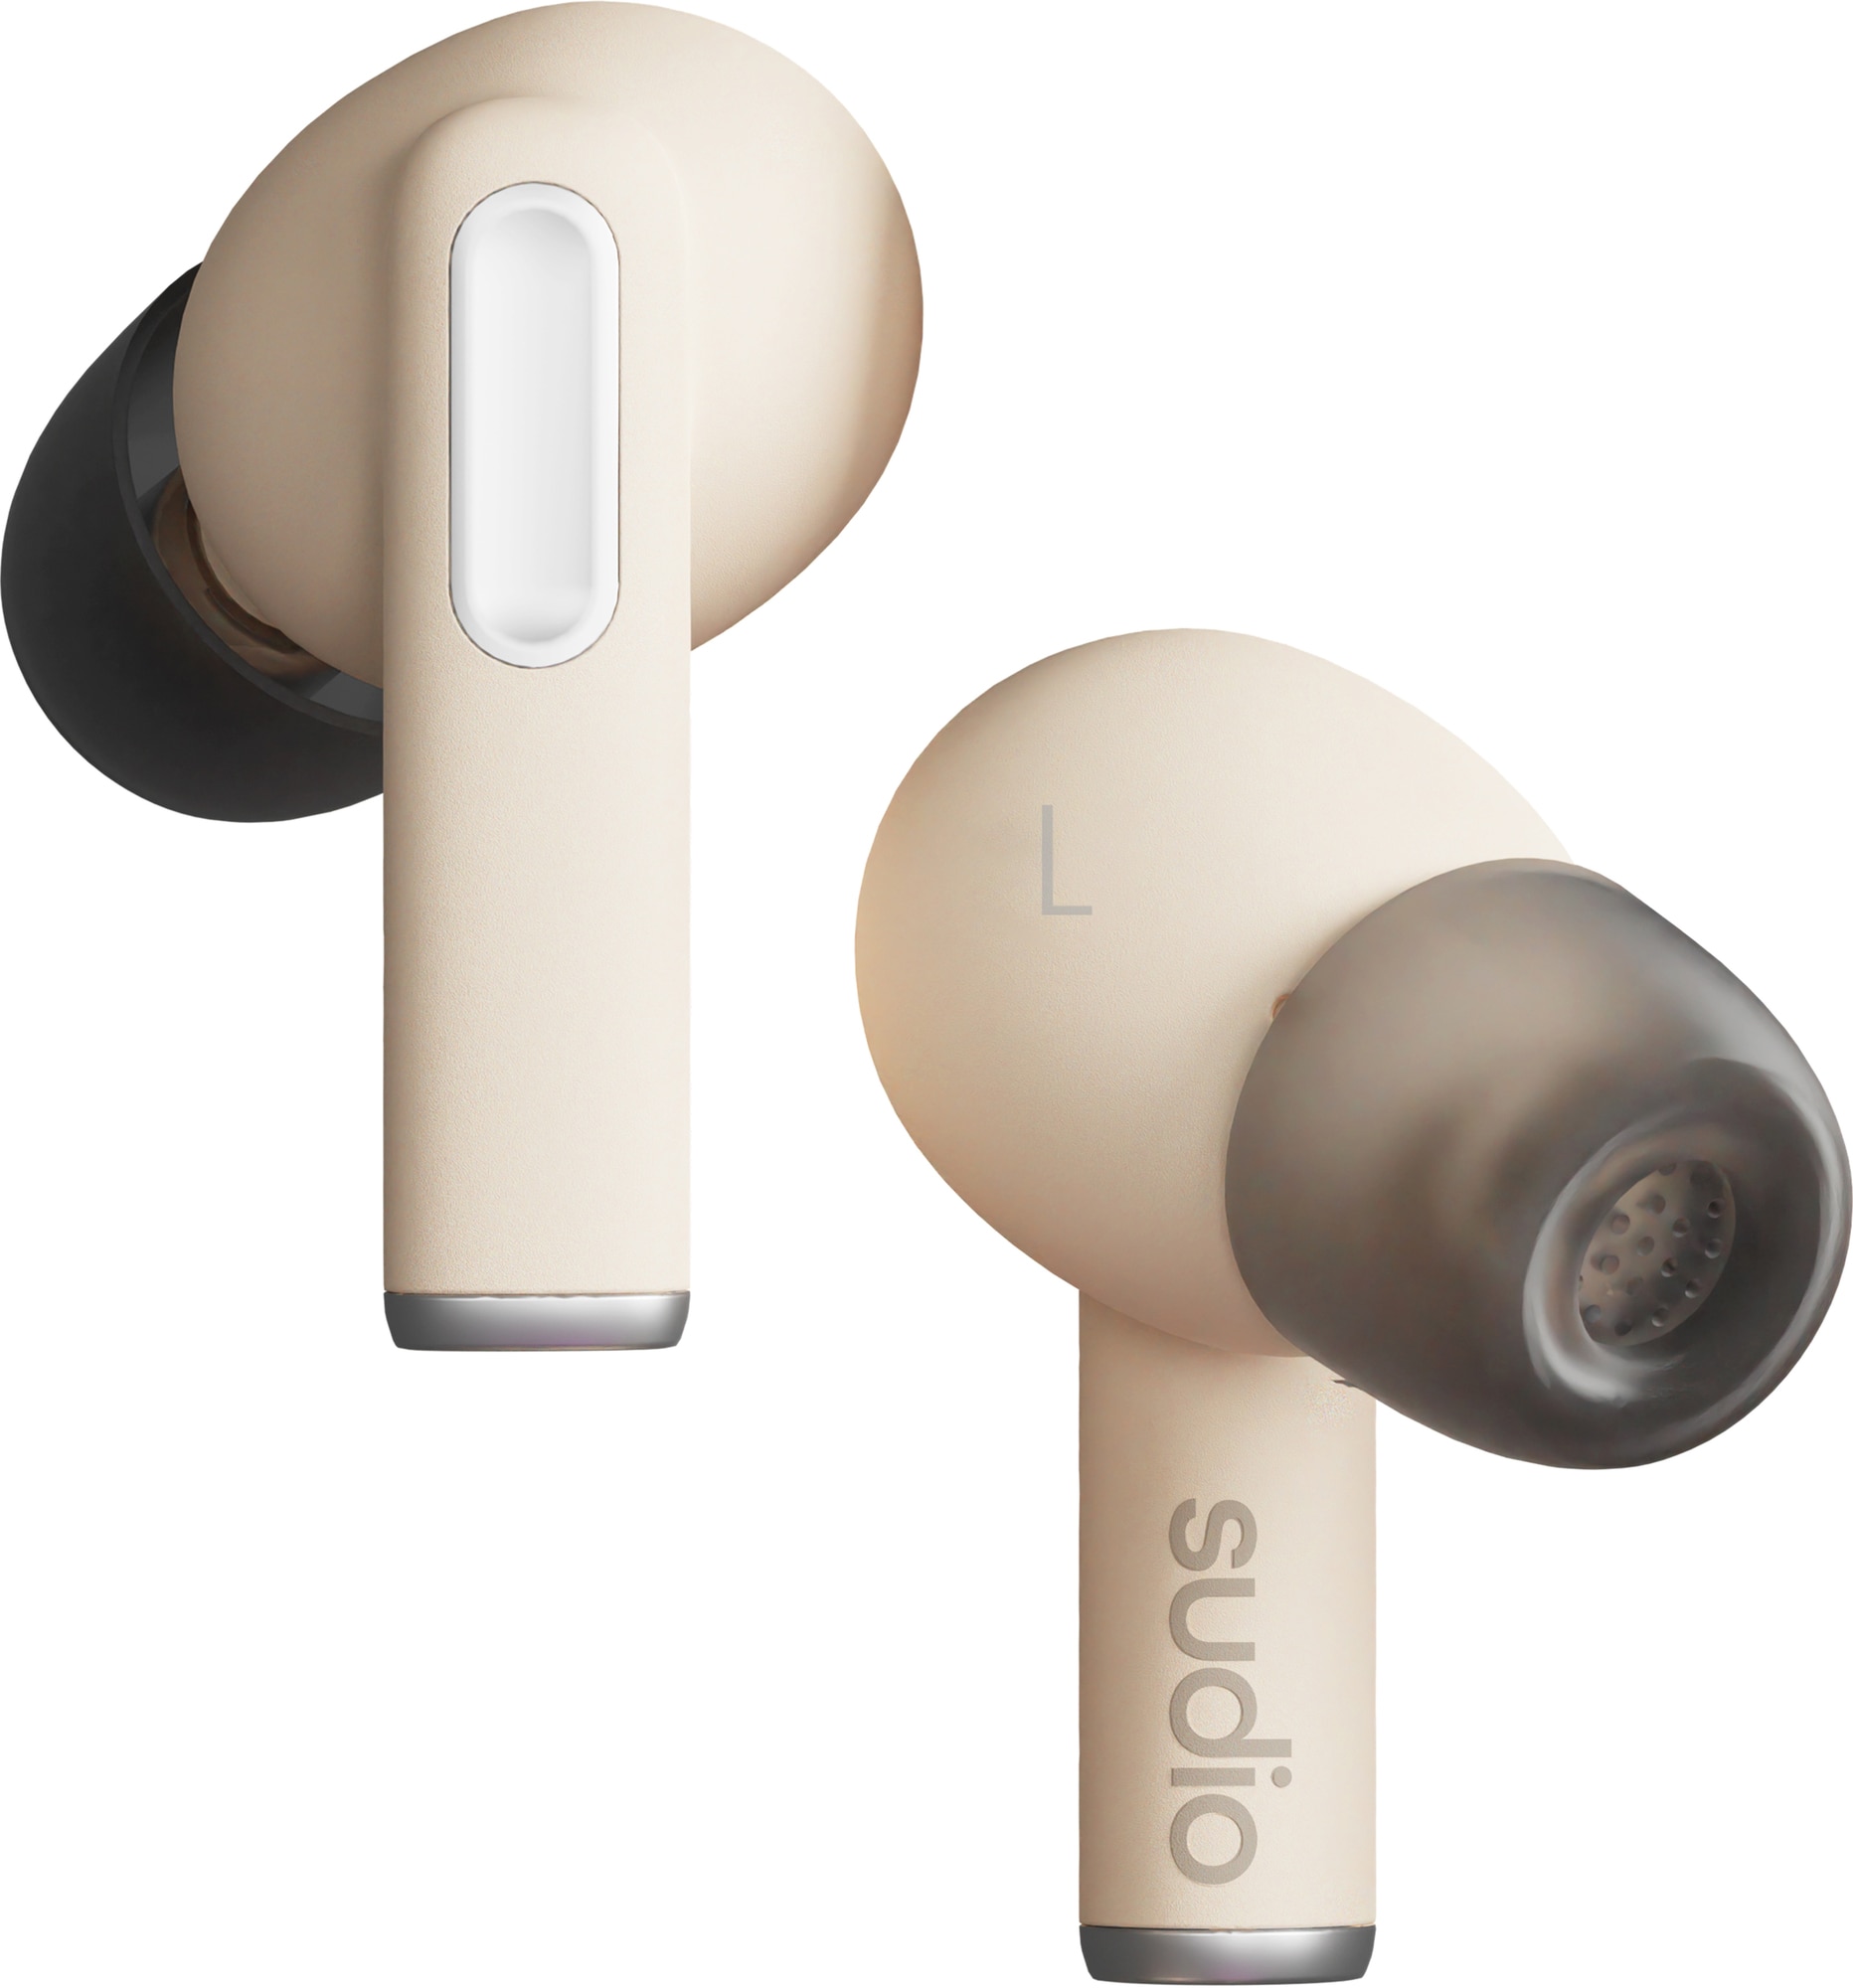 Sudio A1 Pro täysin langattomat in-ear kuulokkeet (hiekka) - Gigantti  verkkokauppa